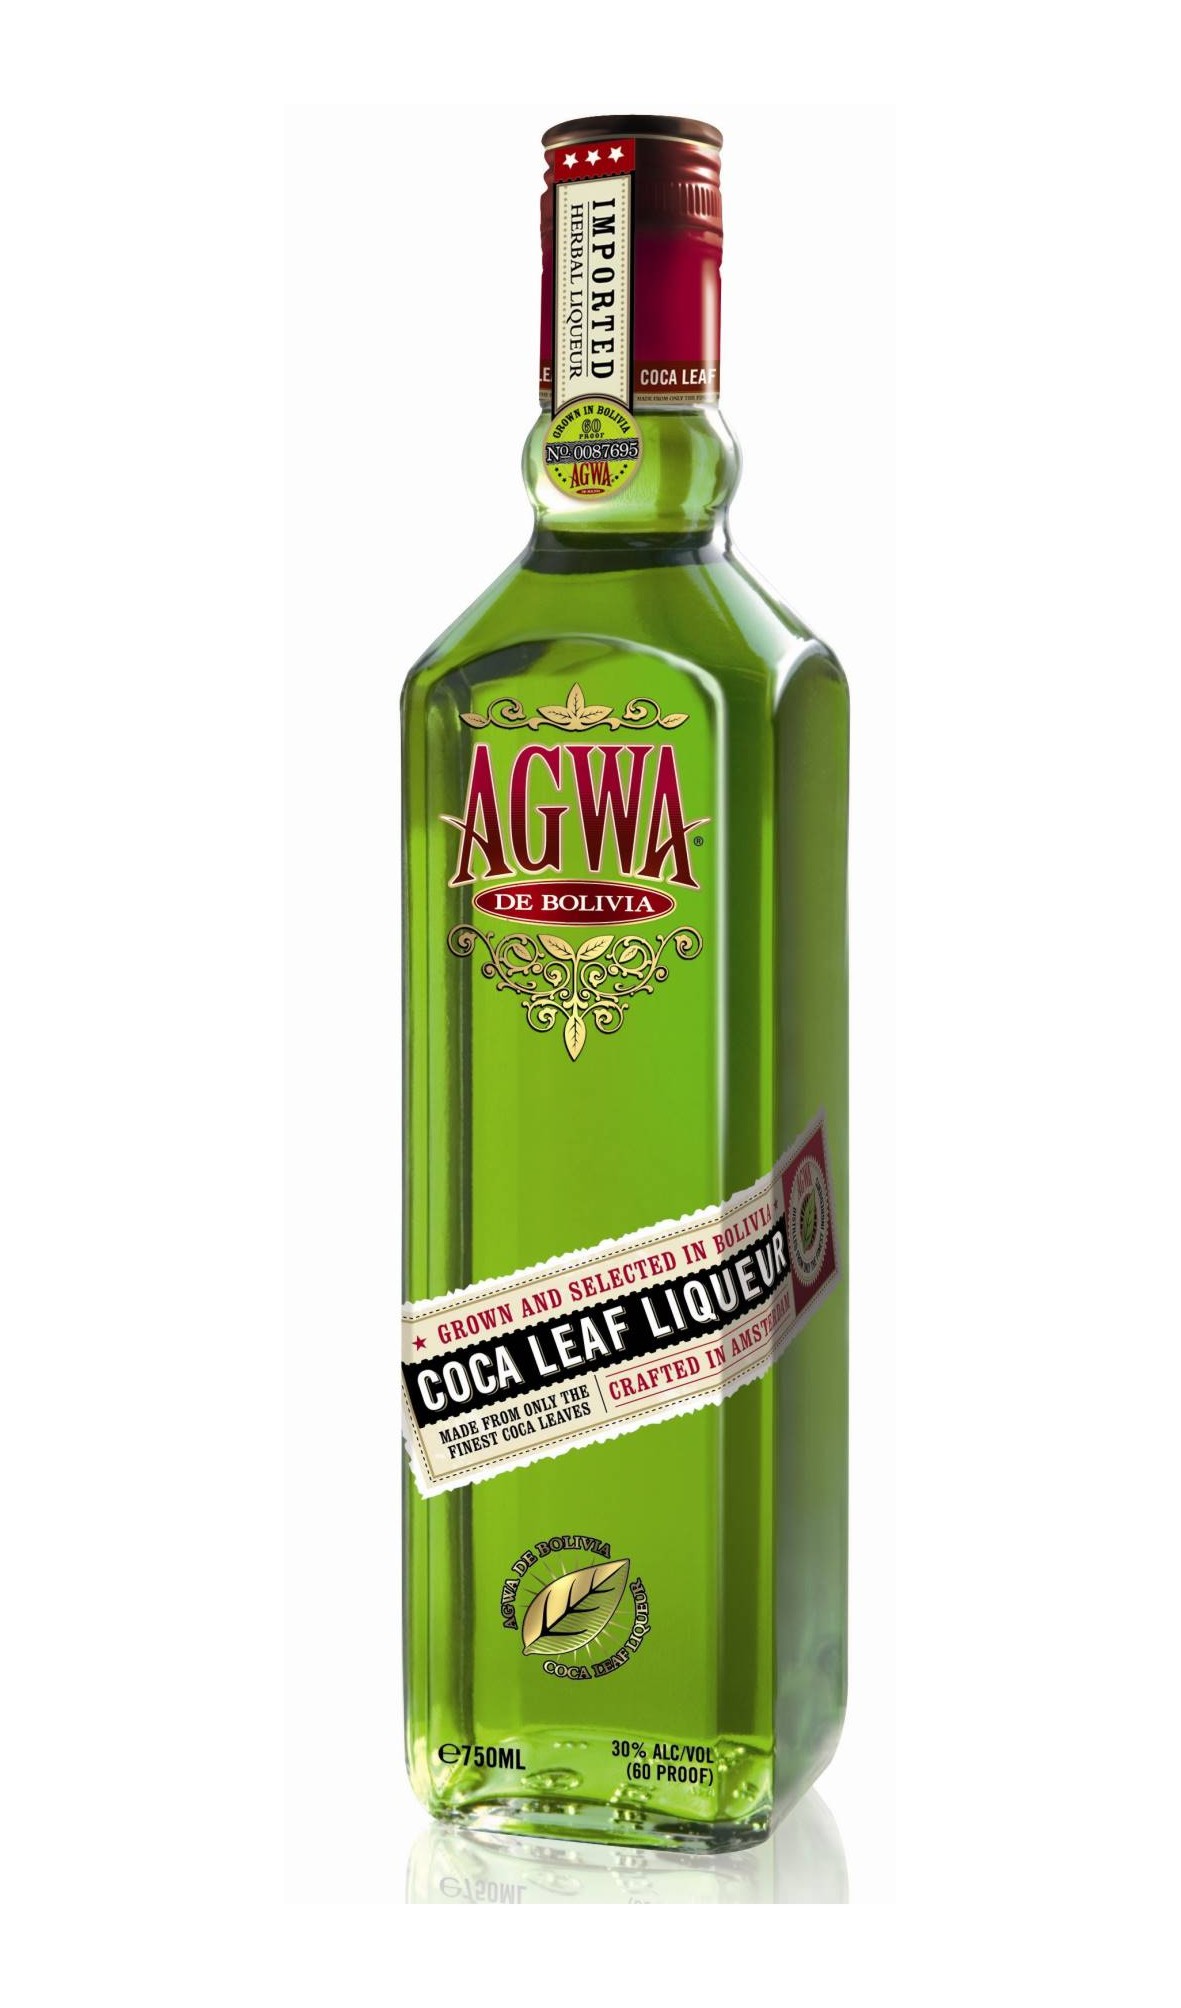 Agwa de Bolivia, Coca leaf liqueur Lik